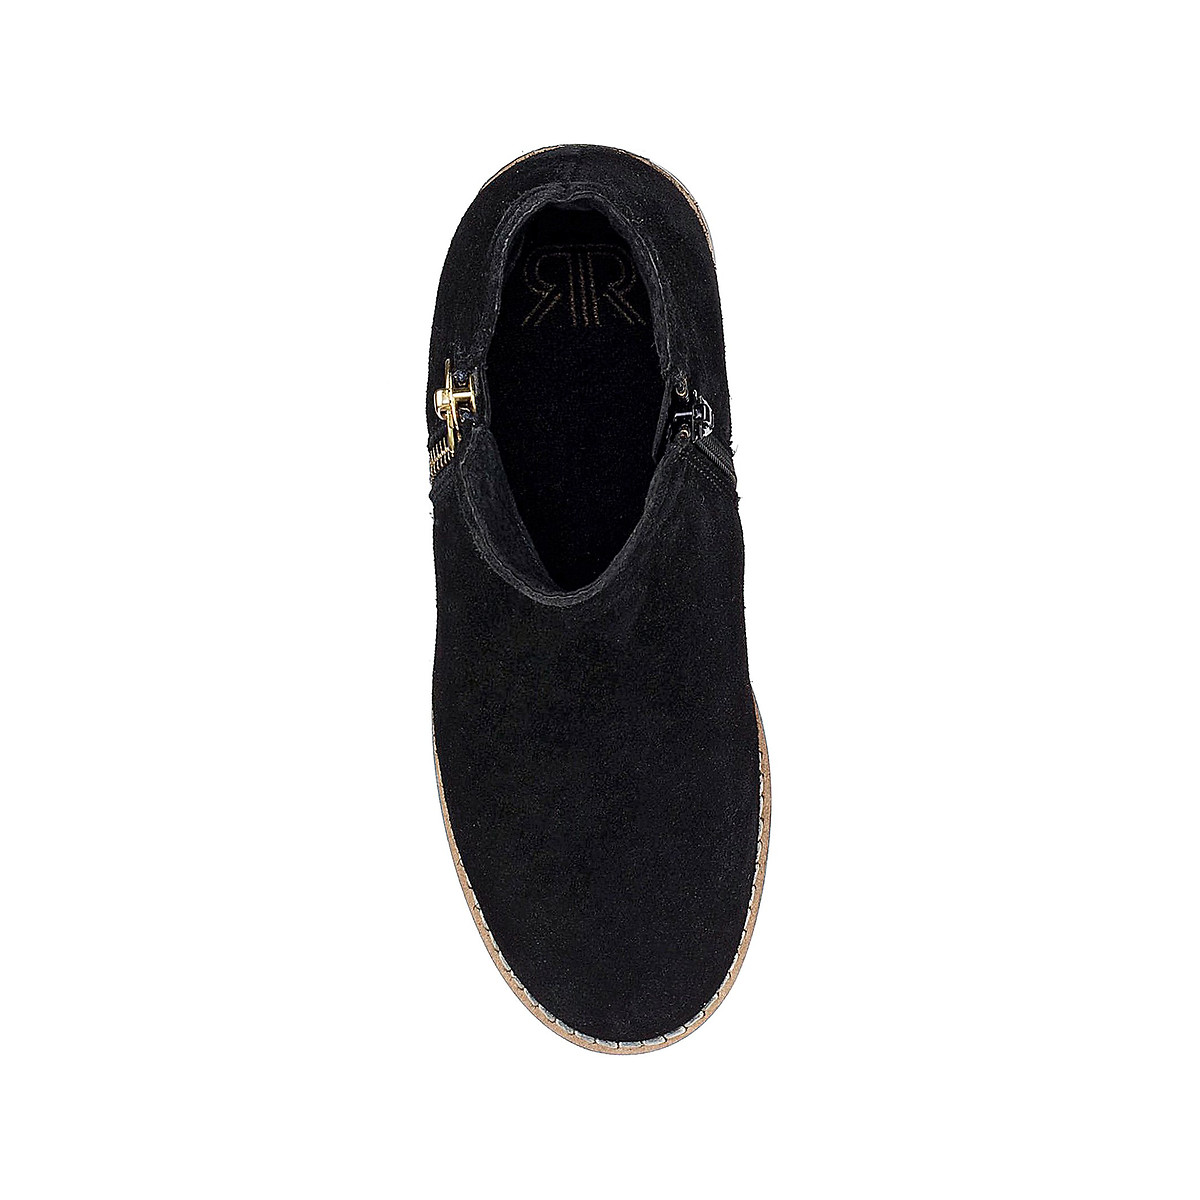 Ботинки LaRedoute На молнии кожаные 26-39 34 черный, размер 34 - фото 4